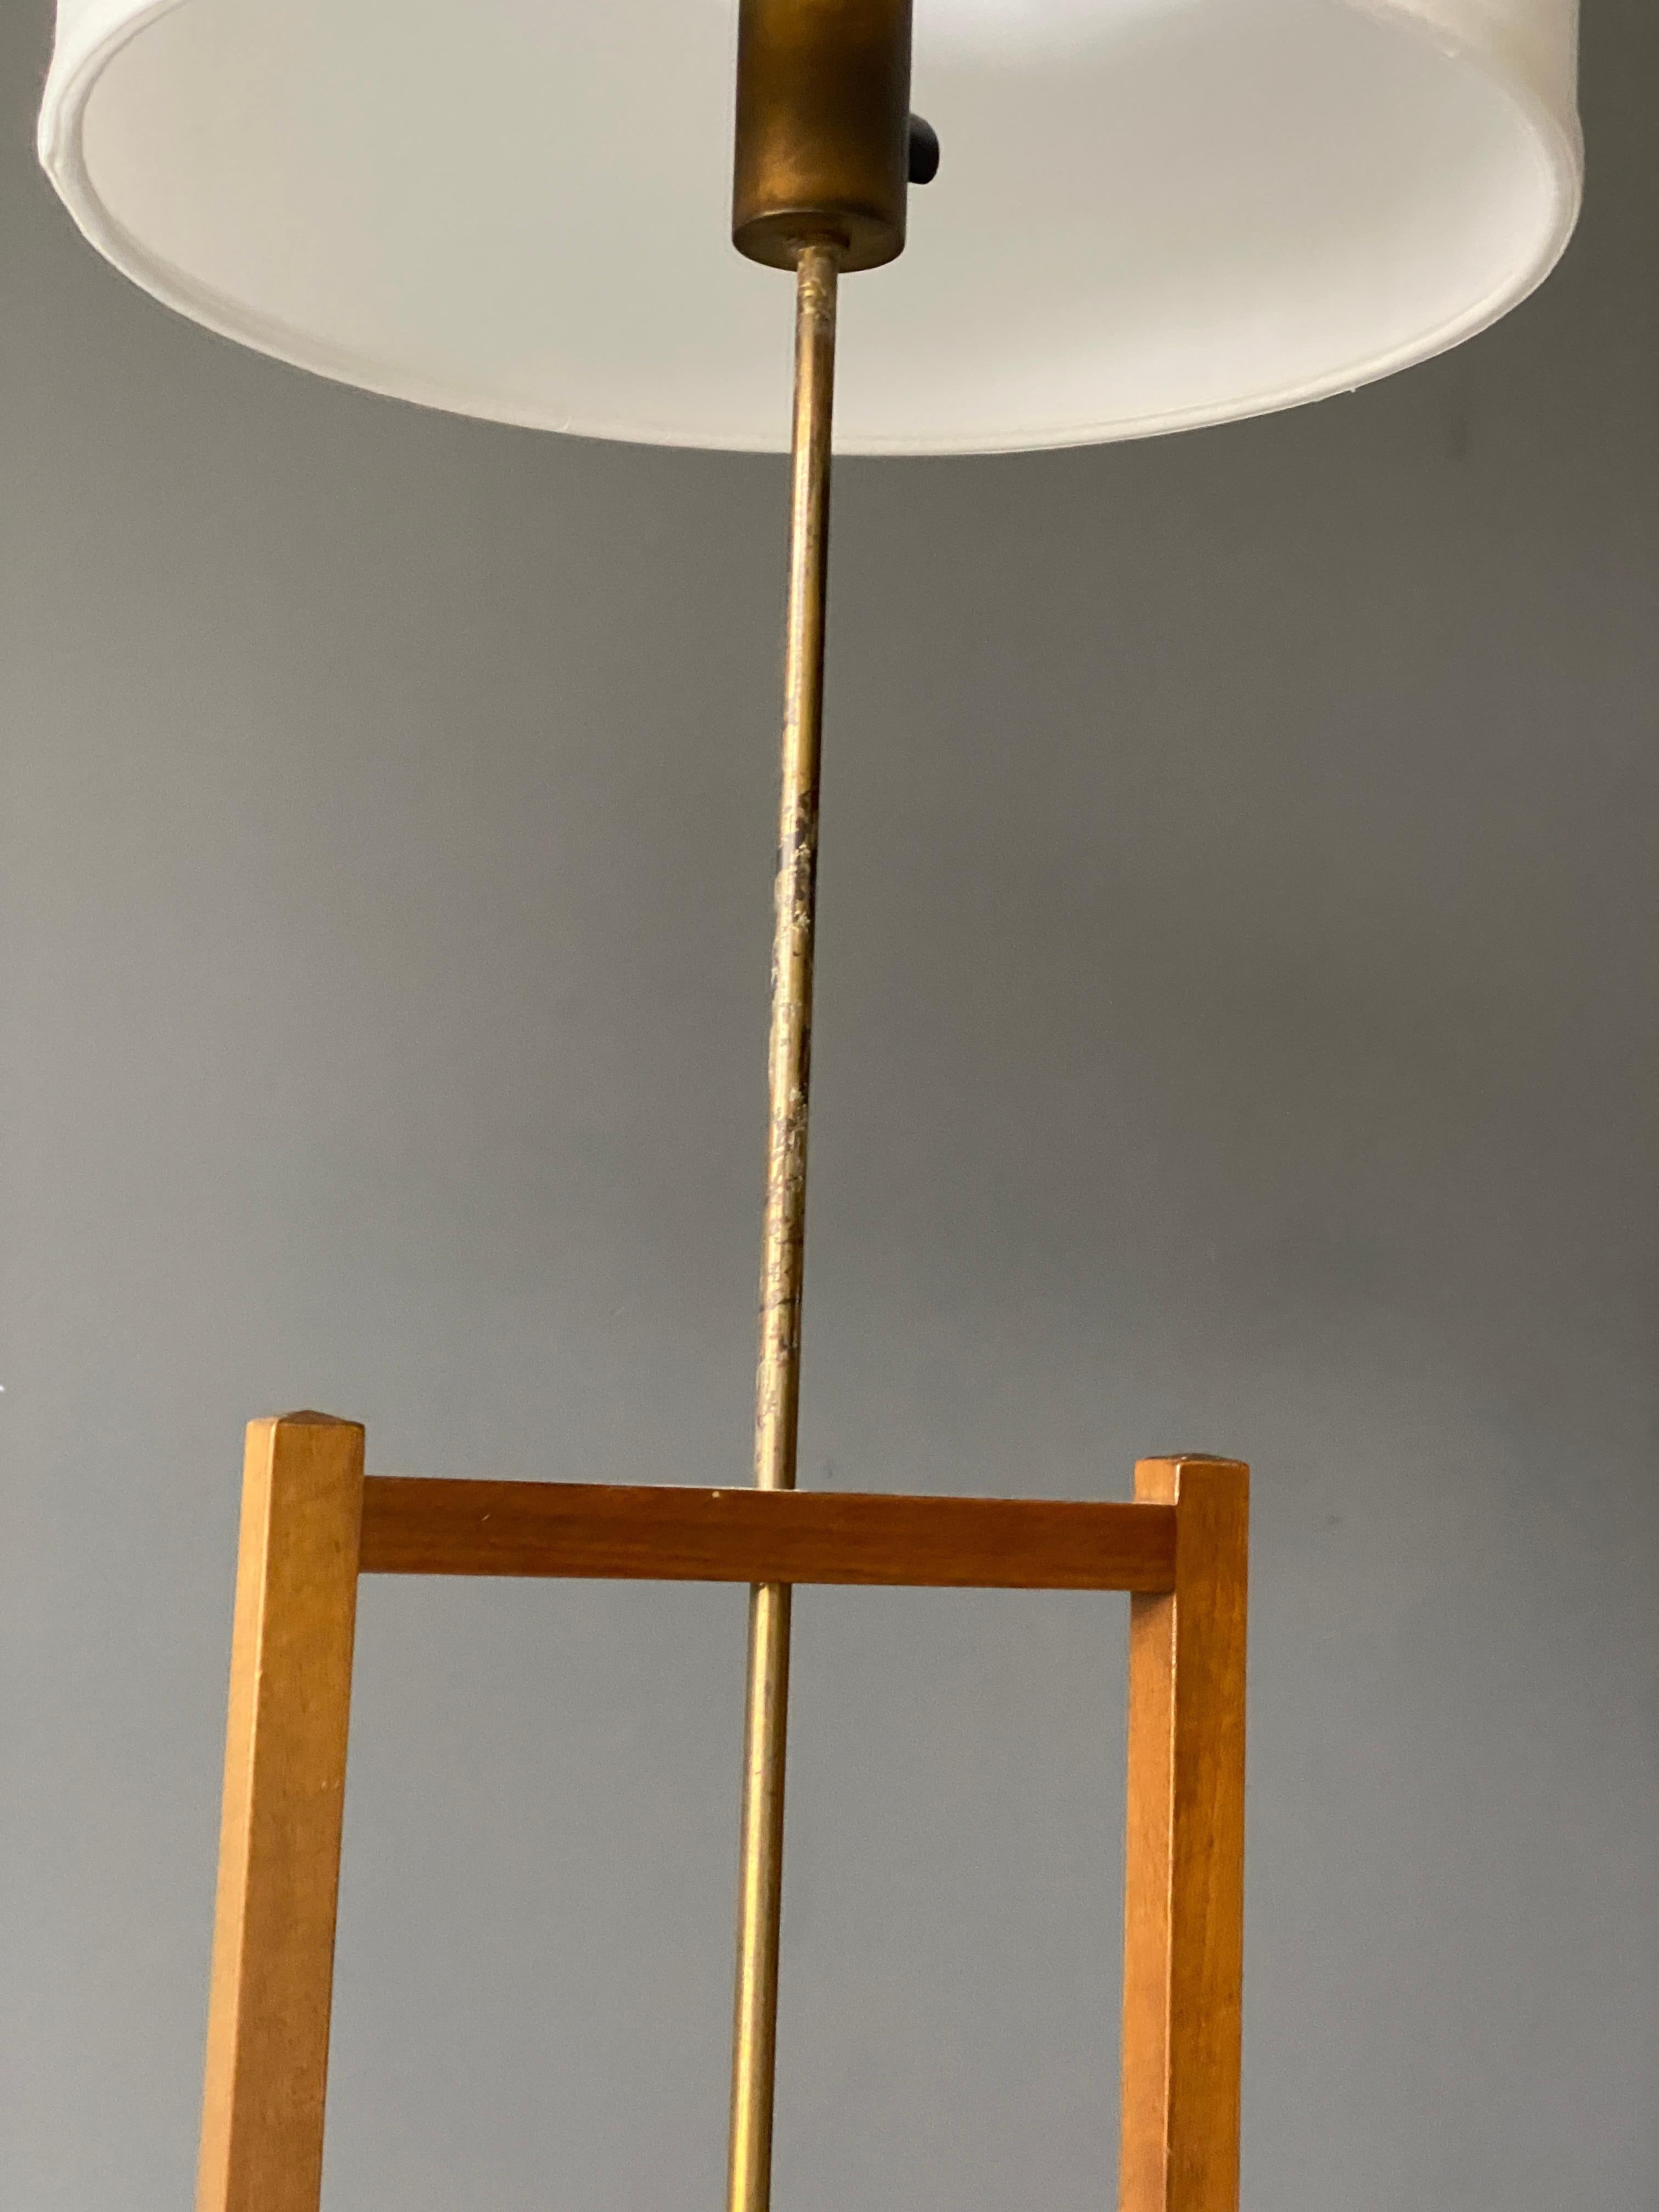 Josef Frank, Early Adjustable Floor Lamps, Brass, Mahogany, Svenskt Tenn, 1950s 1